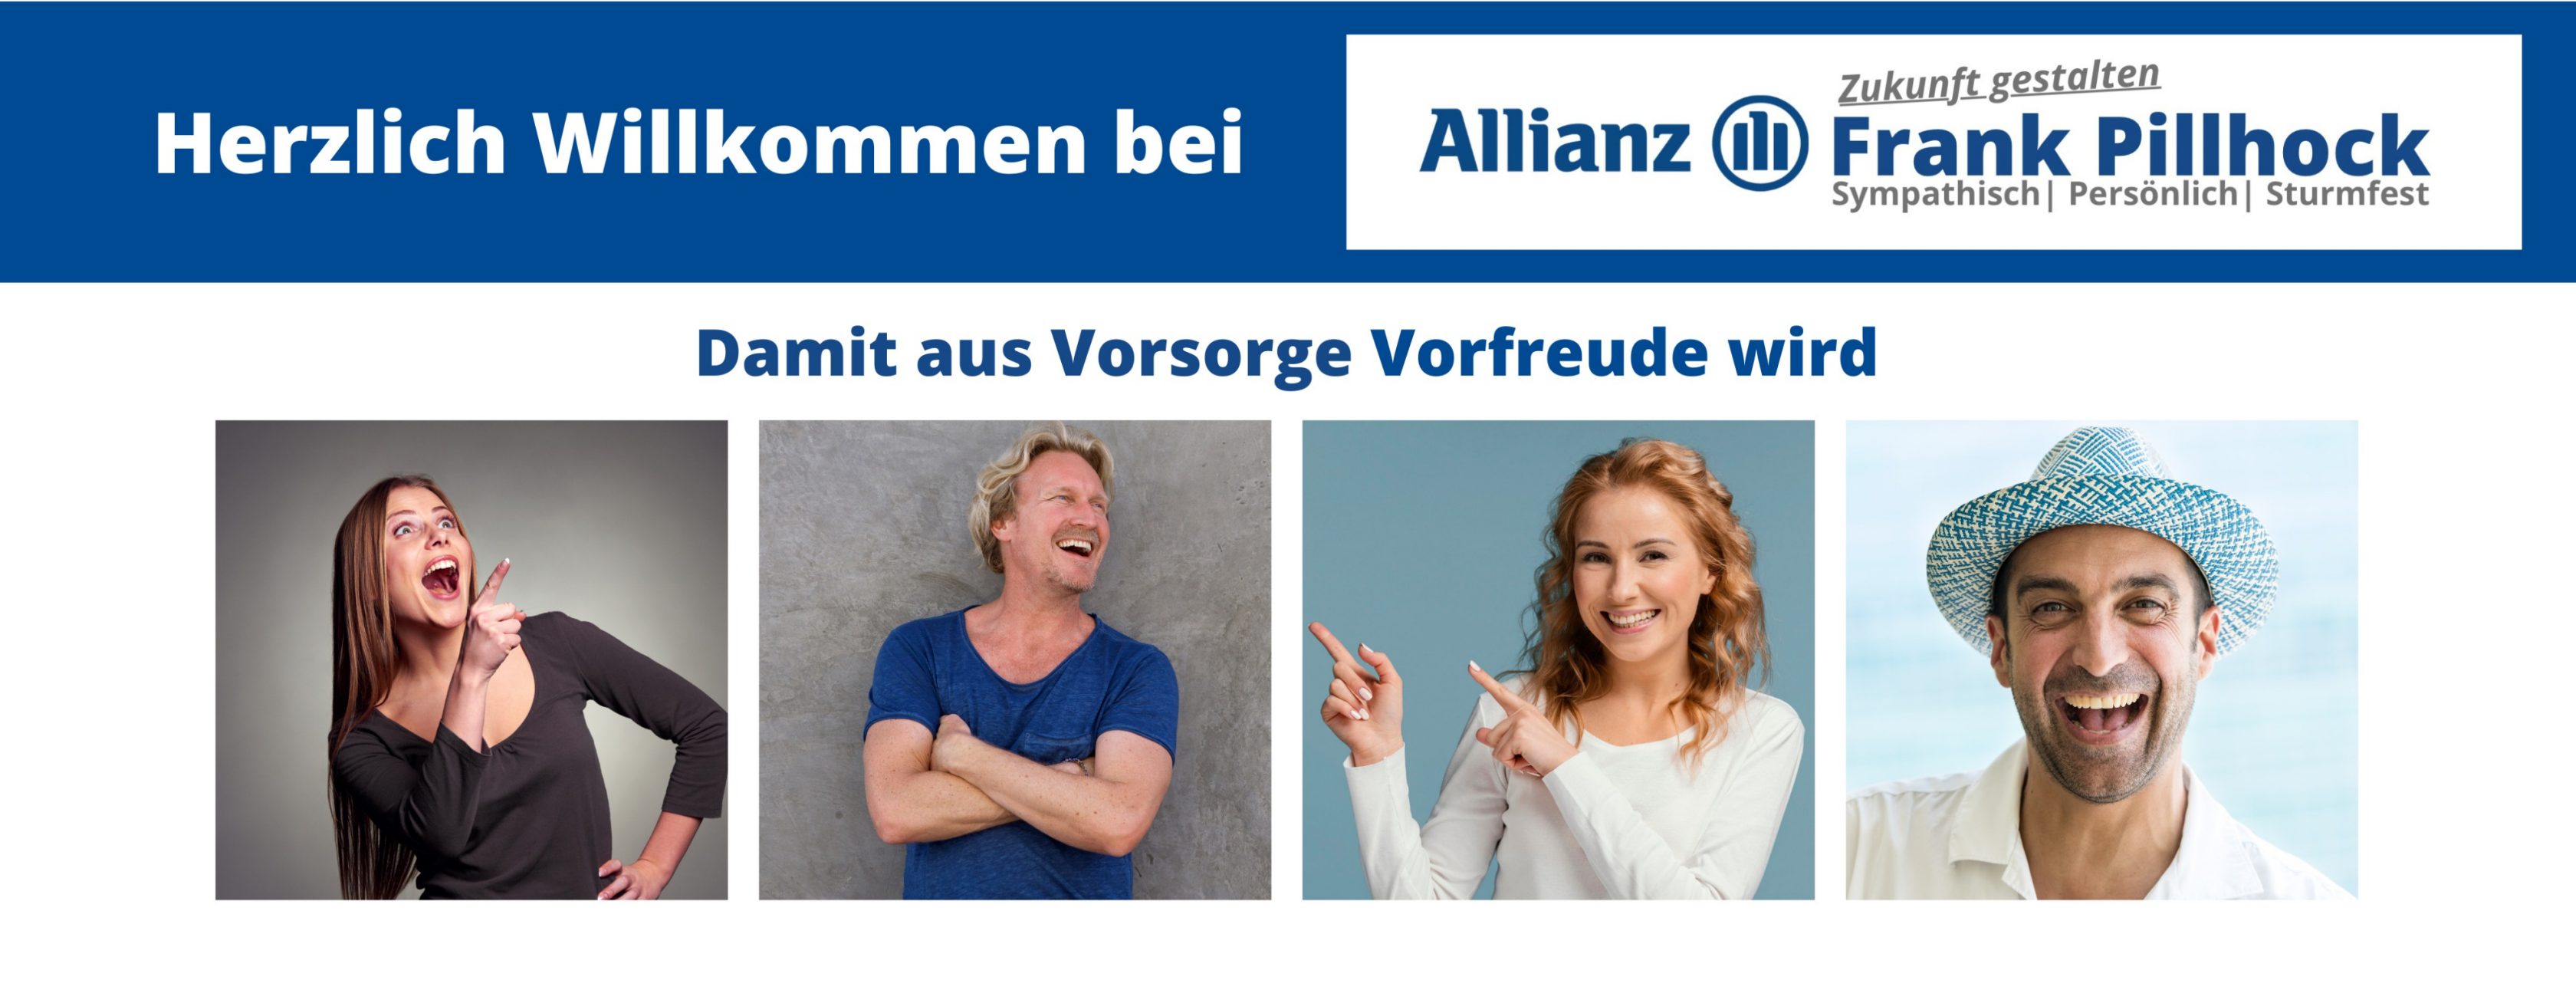 Allianz Versicherung Frank Pillhock Hannover -  Rentenversicherung Sparvertrag Geldanlage Zinsen